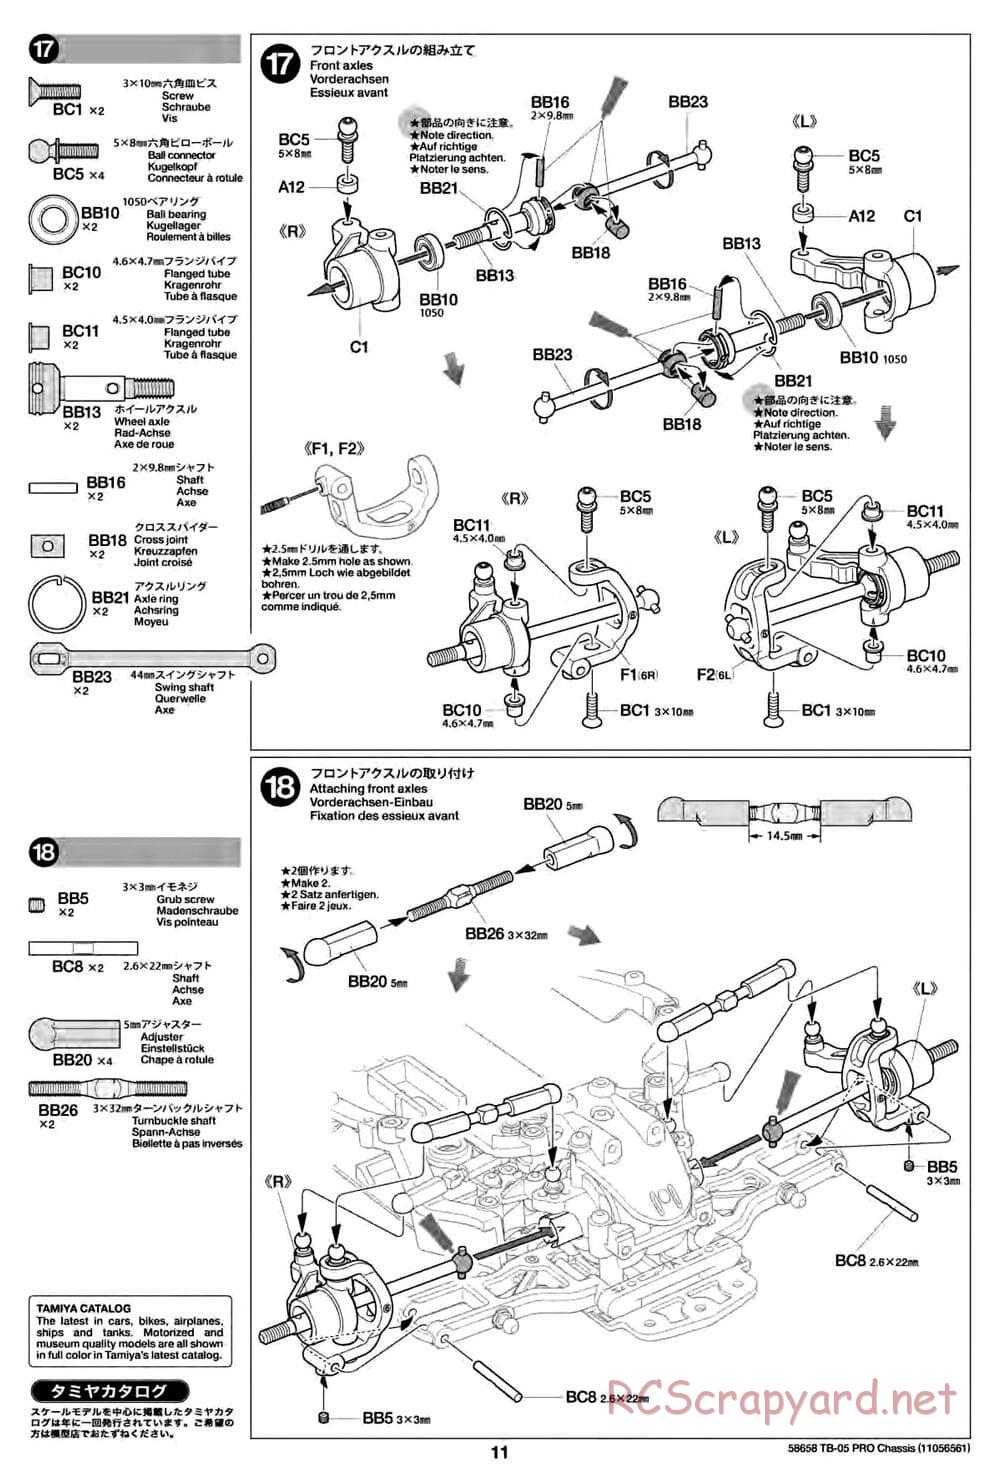 Tamiya - TB-05 Pro Chassis - Manual - Page 11